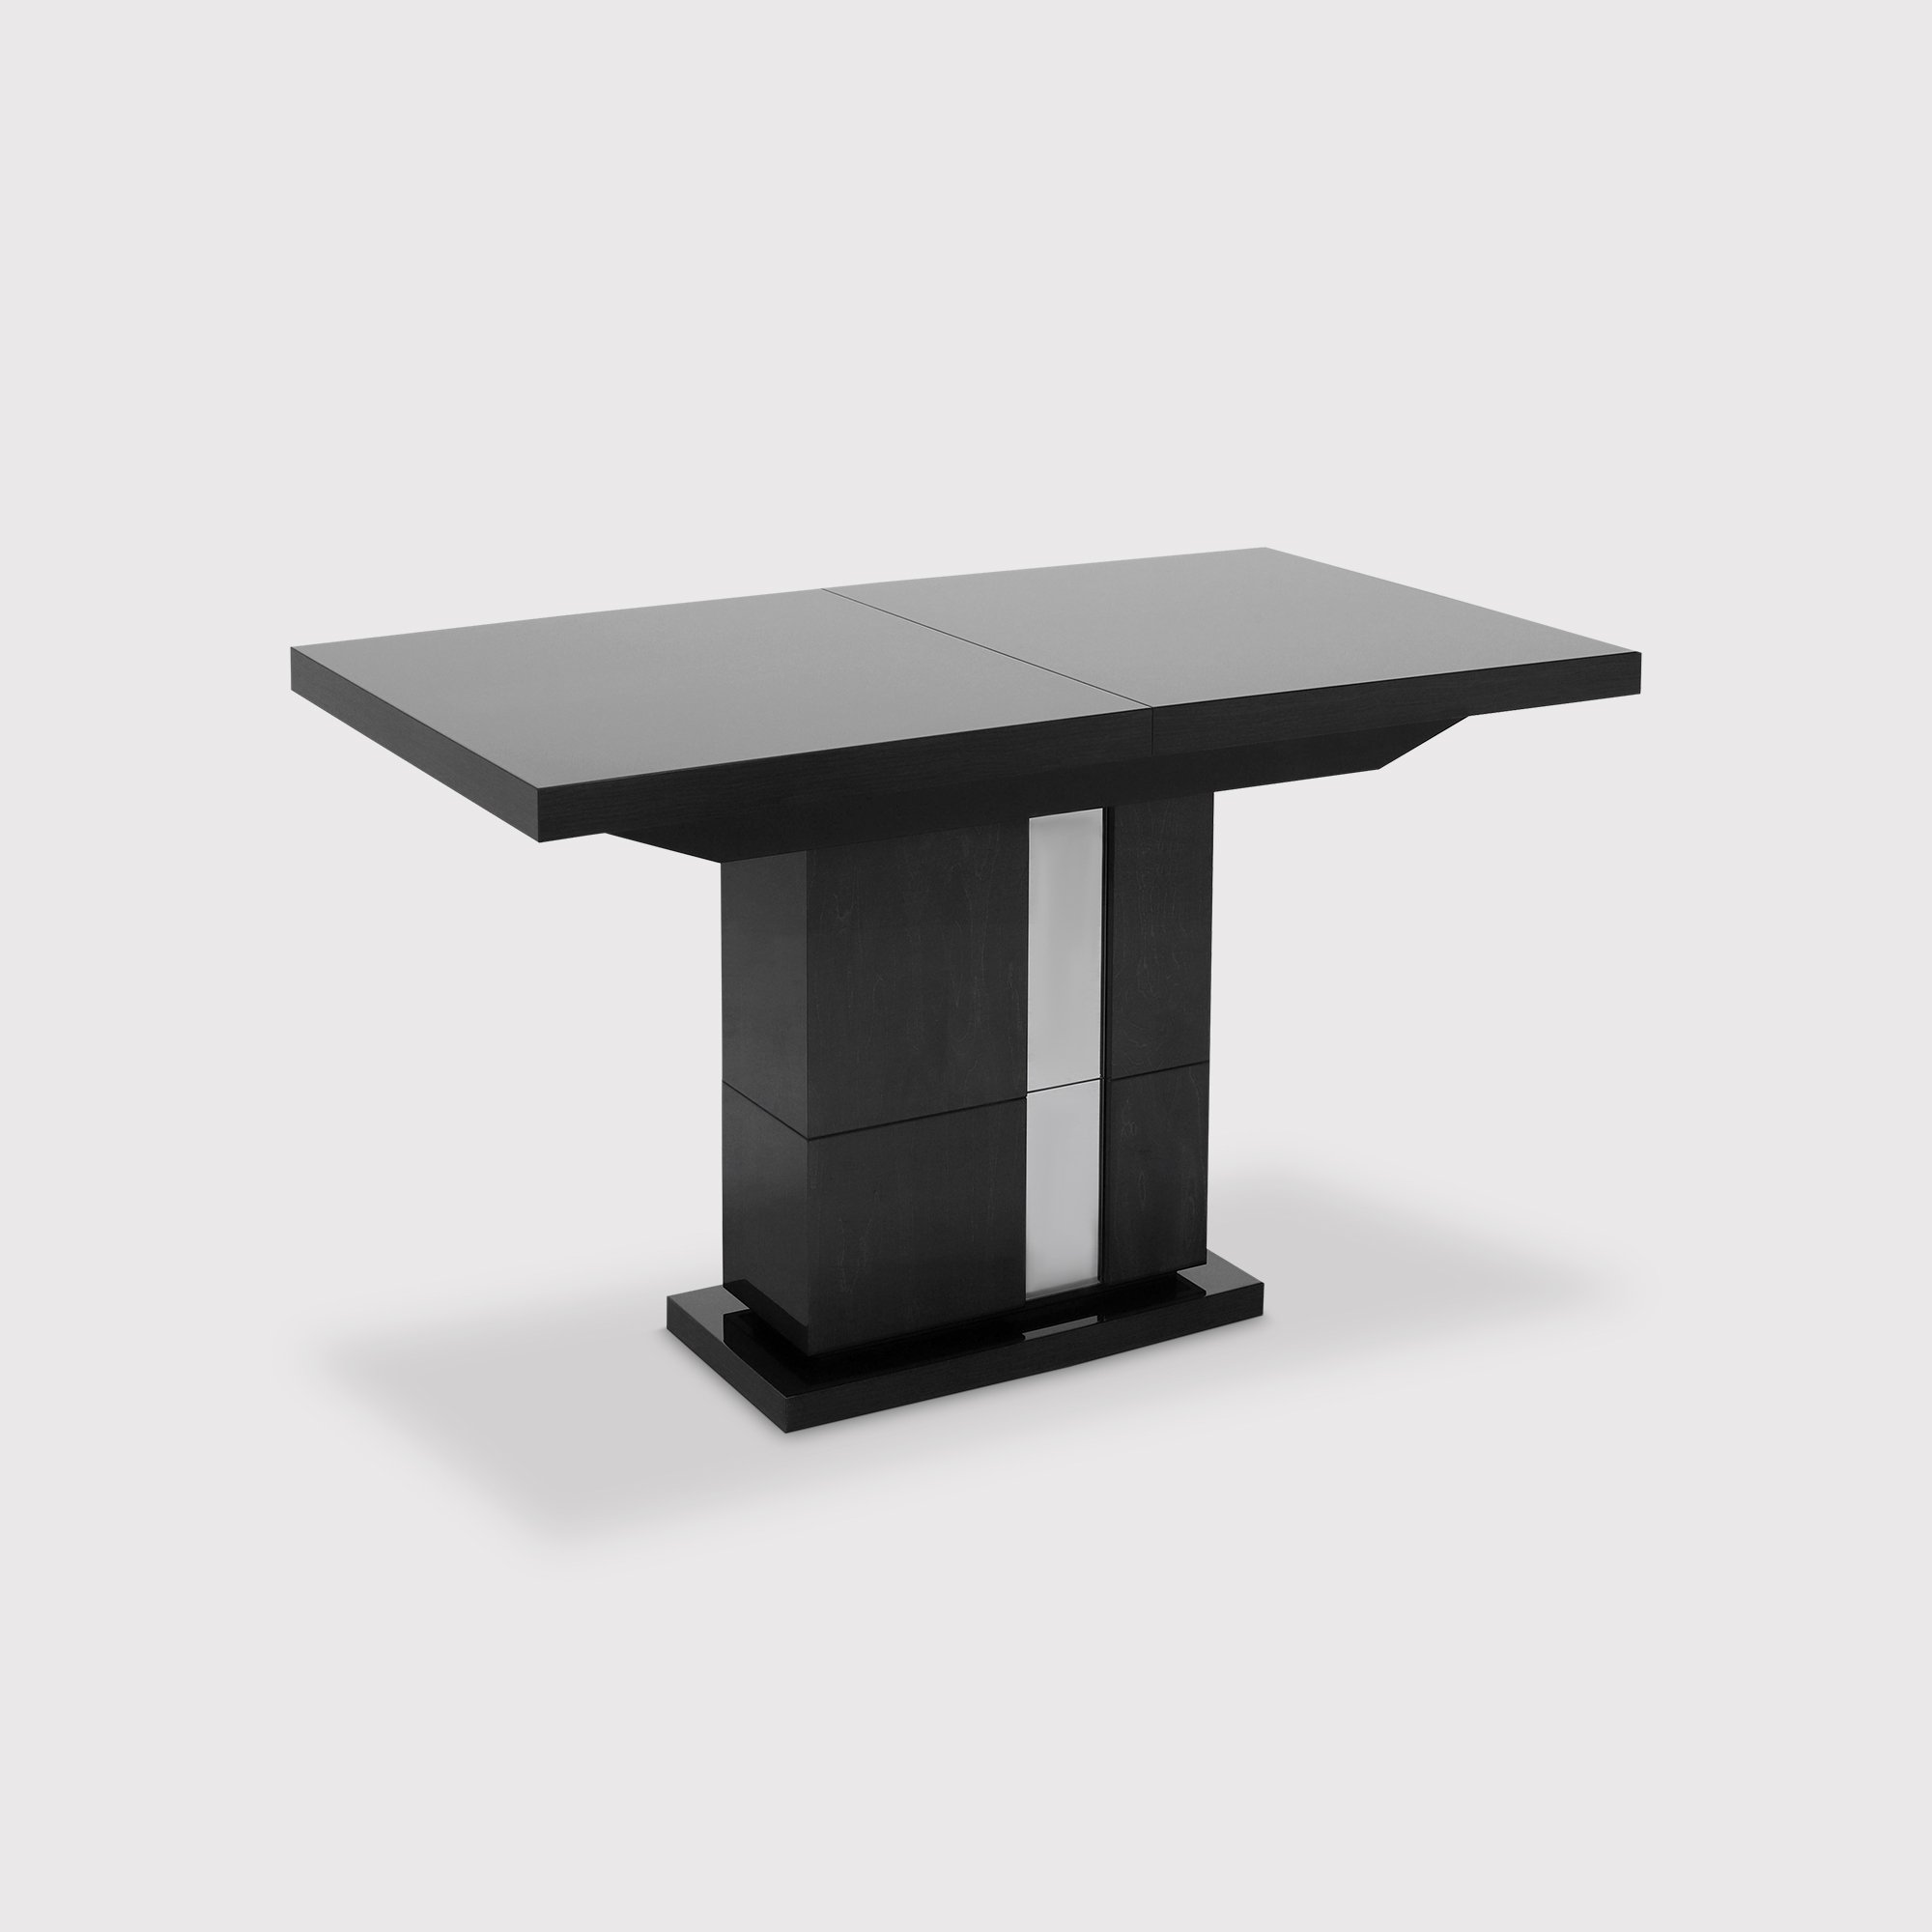 Carvelle Dining Table 196/250cm, Black Gloss | Barker & Stonehouse